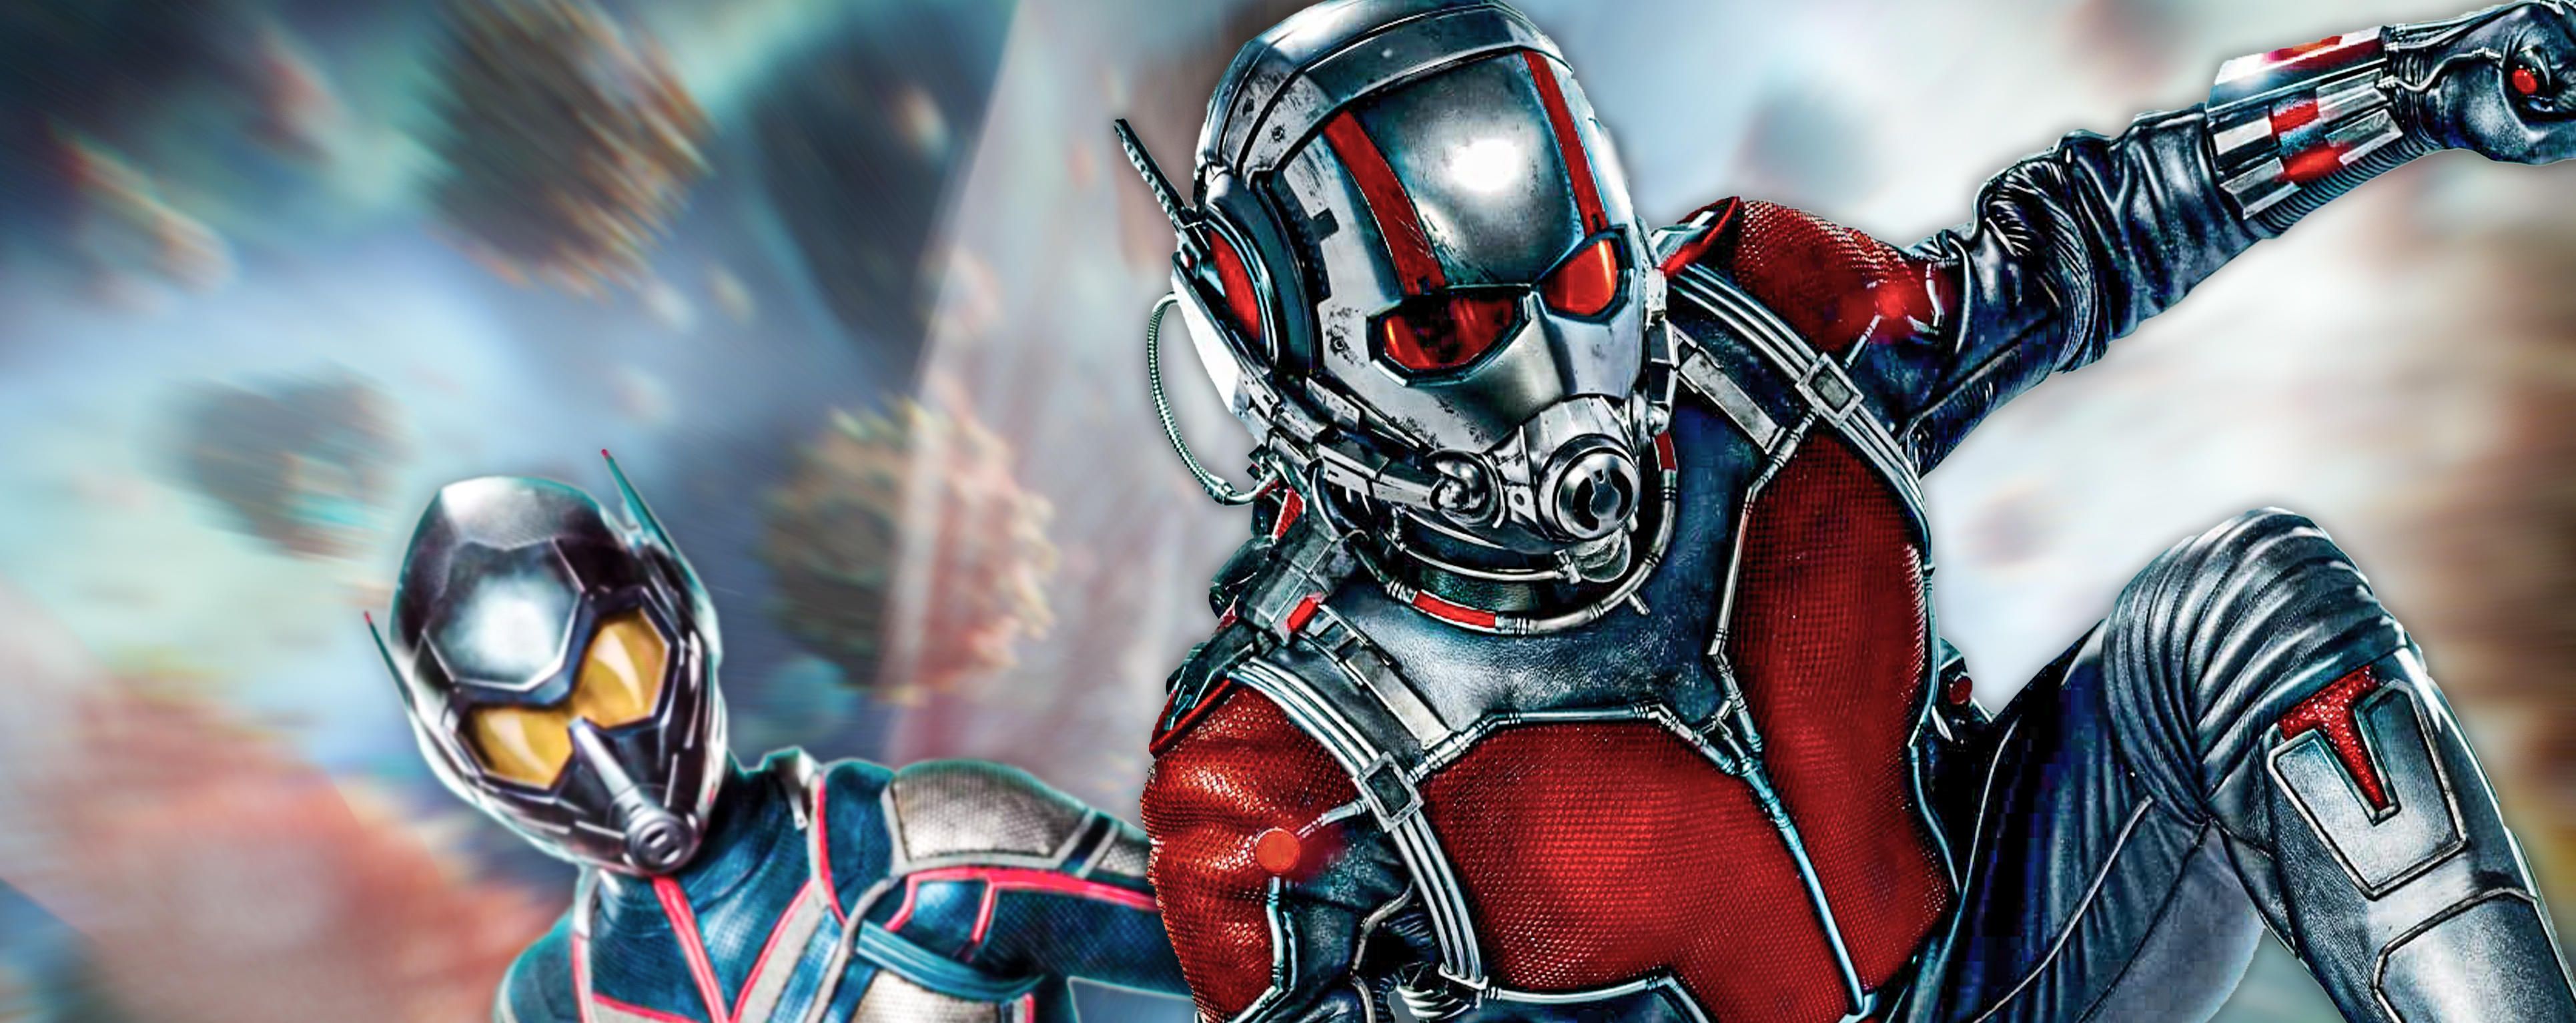 Ant-Man 3 Poster Reveals Cassie Lang's Superhero Suit